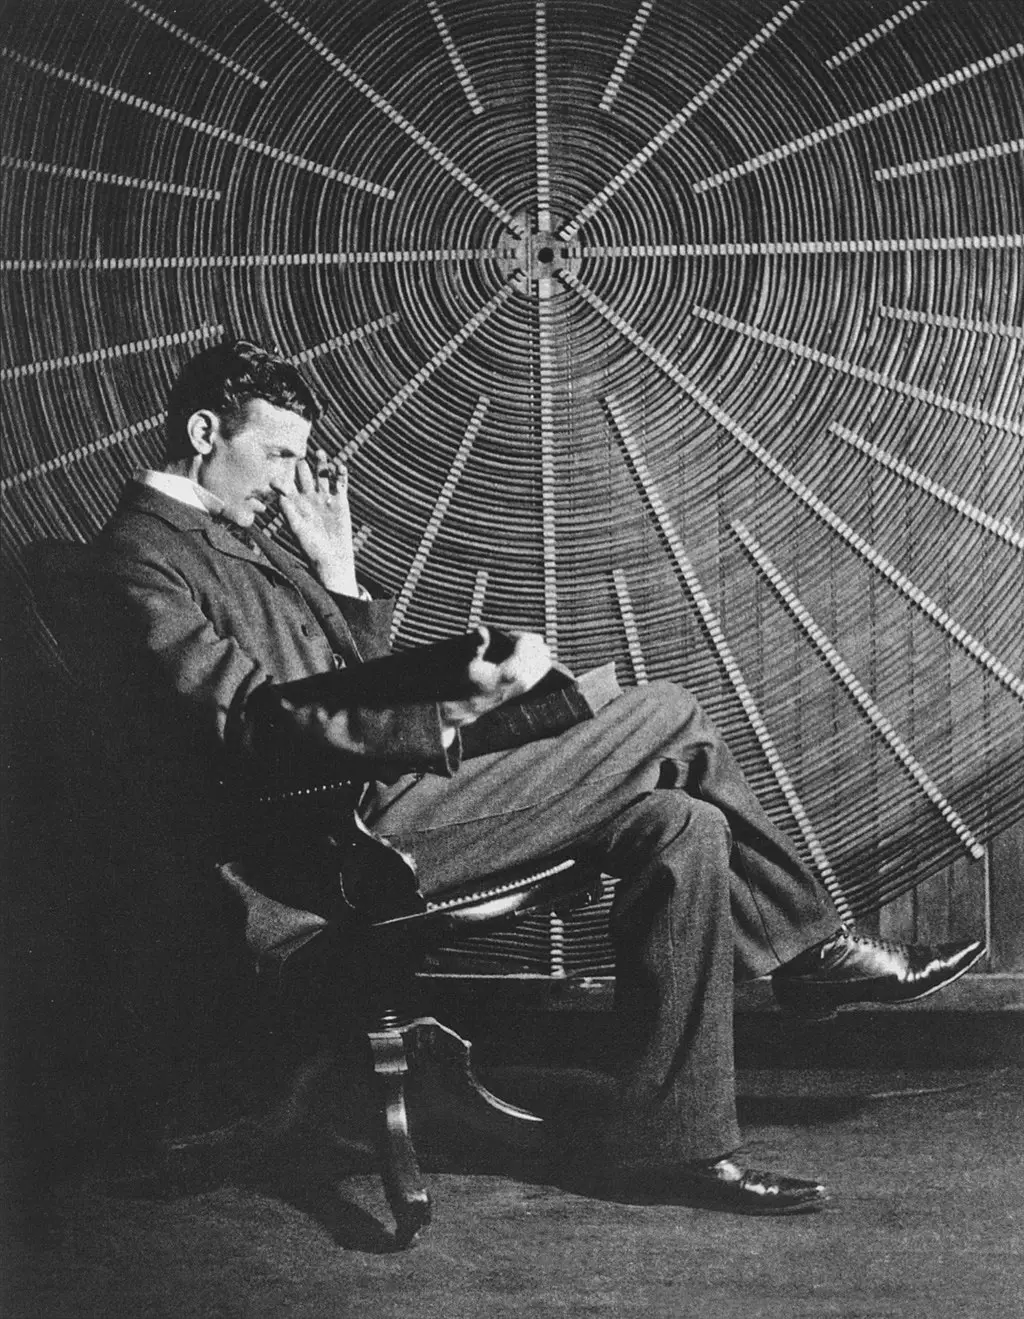 La fascinante historia de la Torre Wardenclyffe, el misterioso proyecto de Tesla